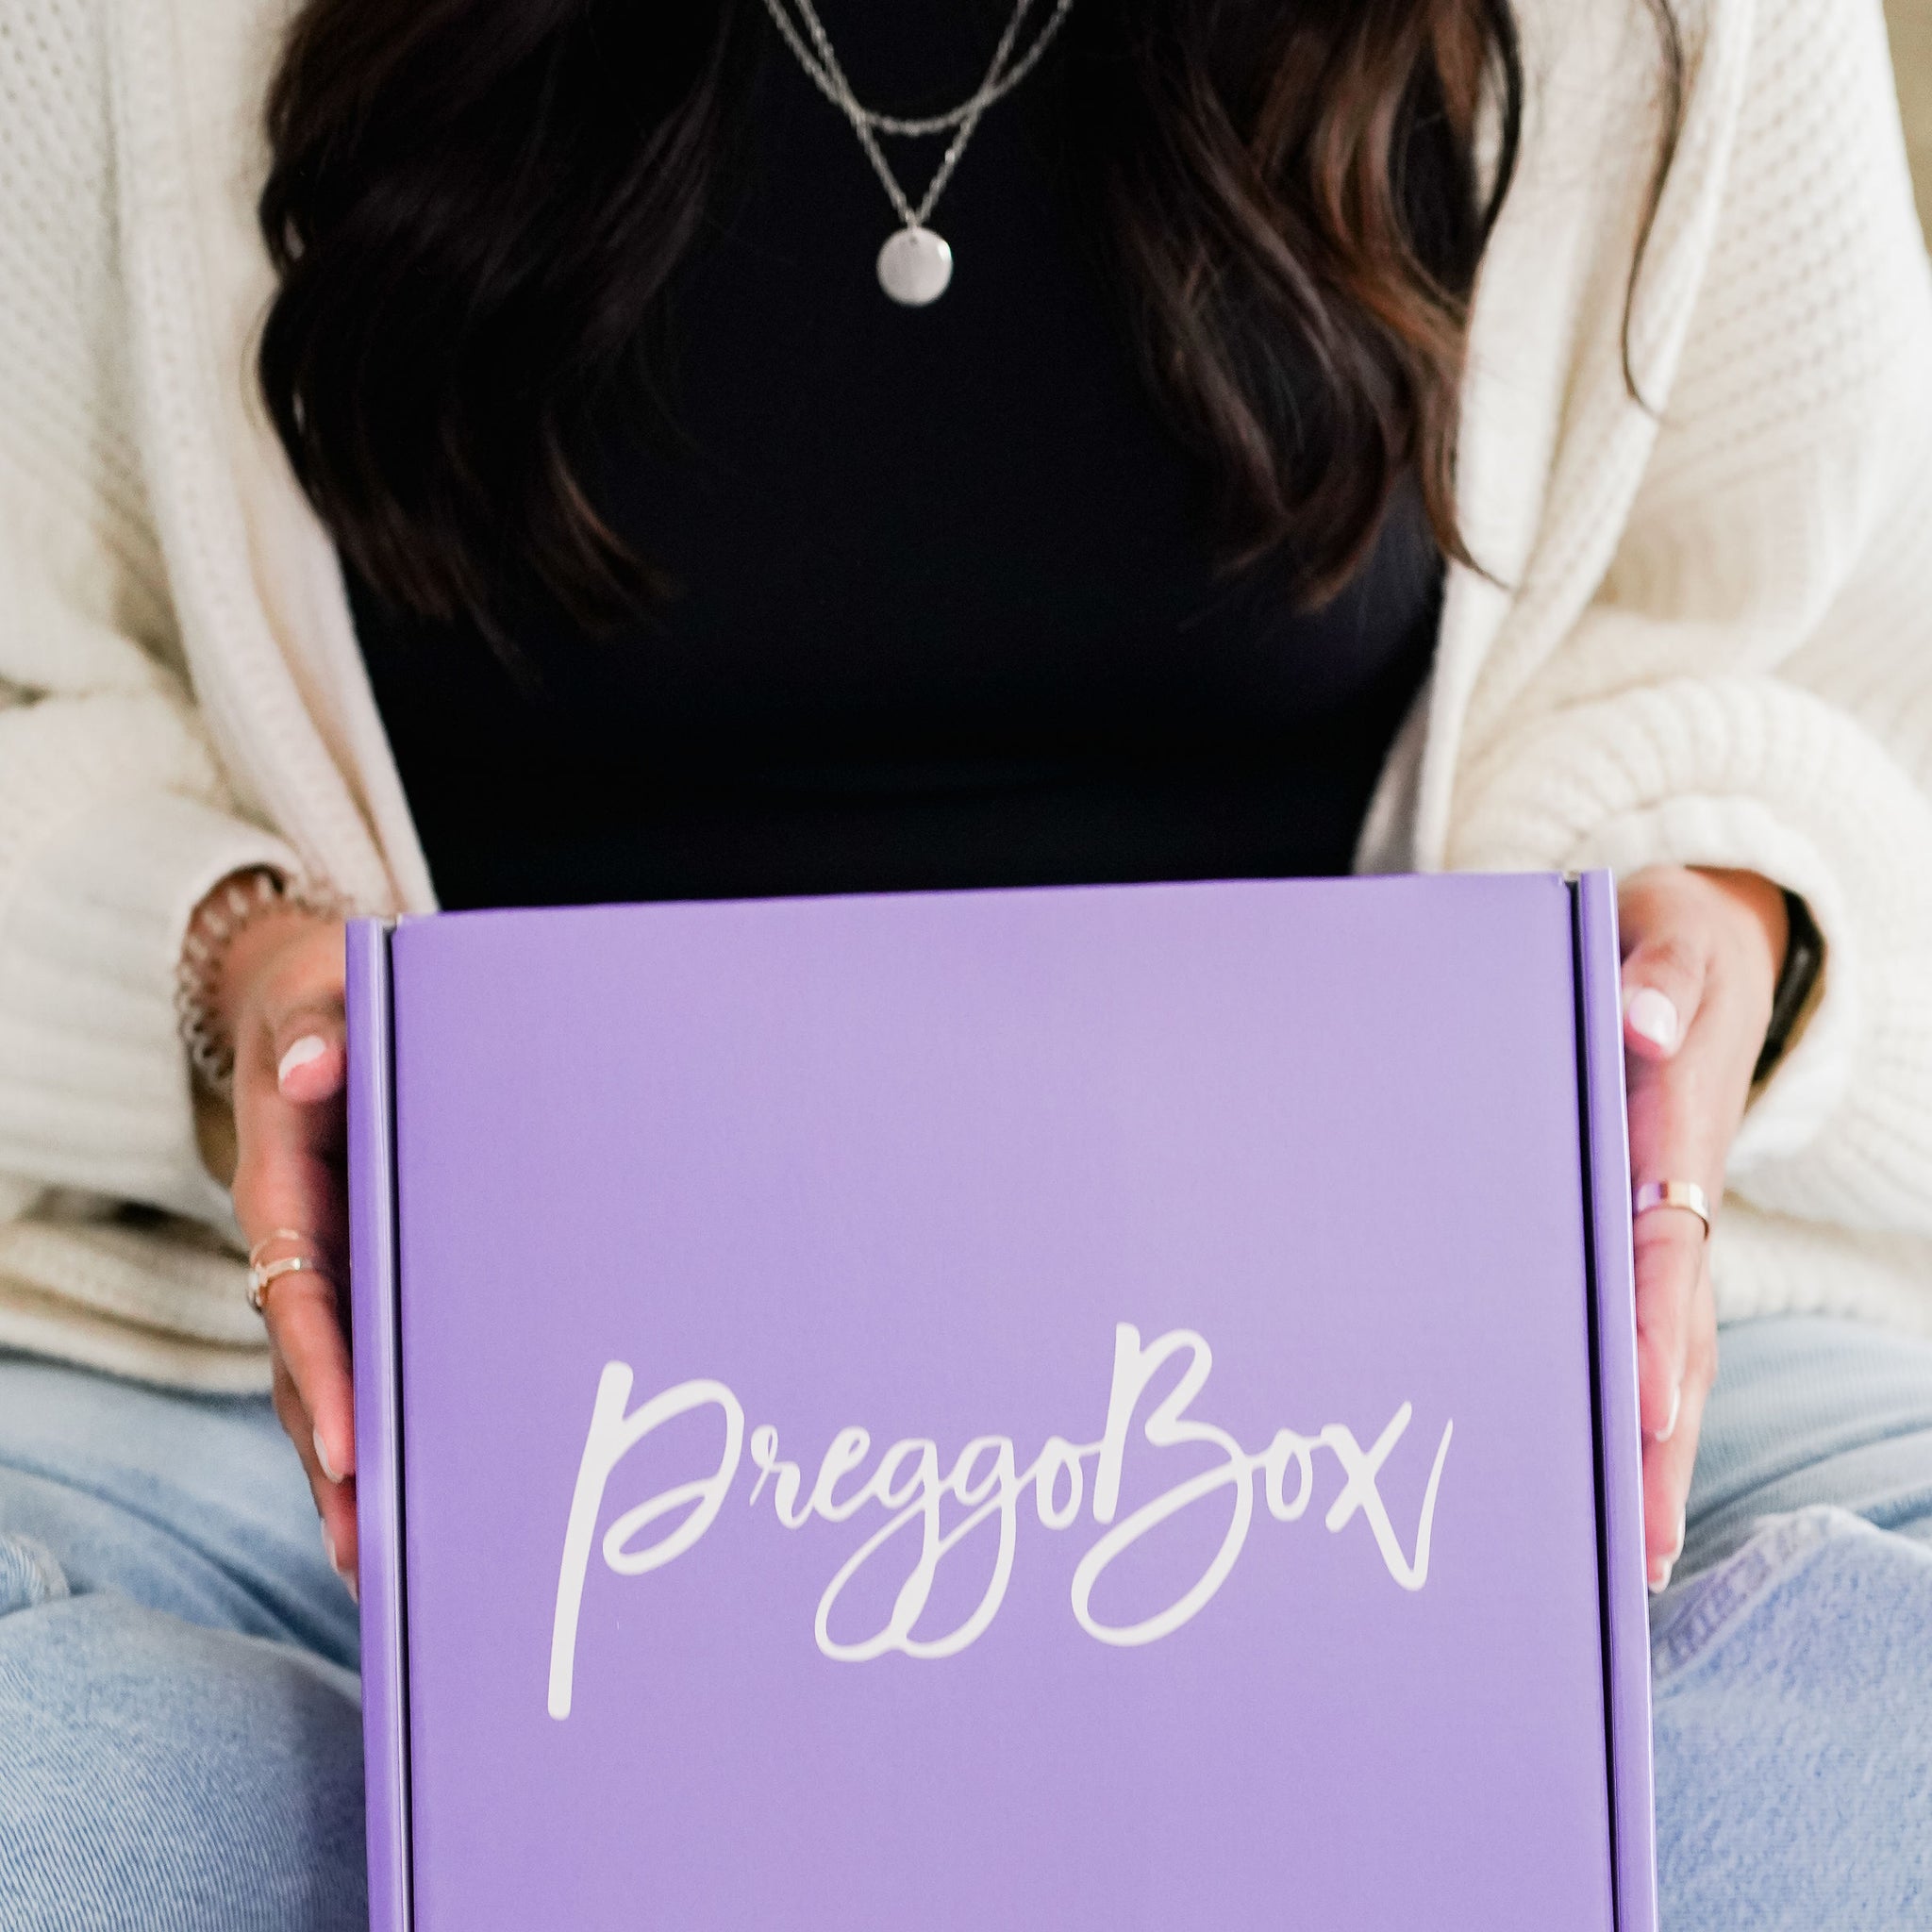 PreggoBox Gift Box